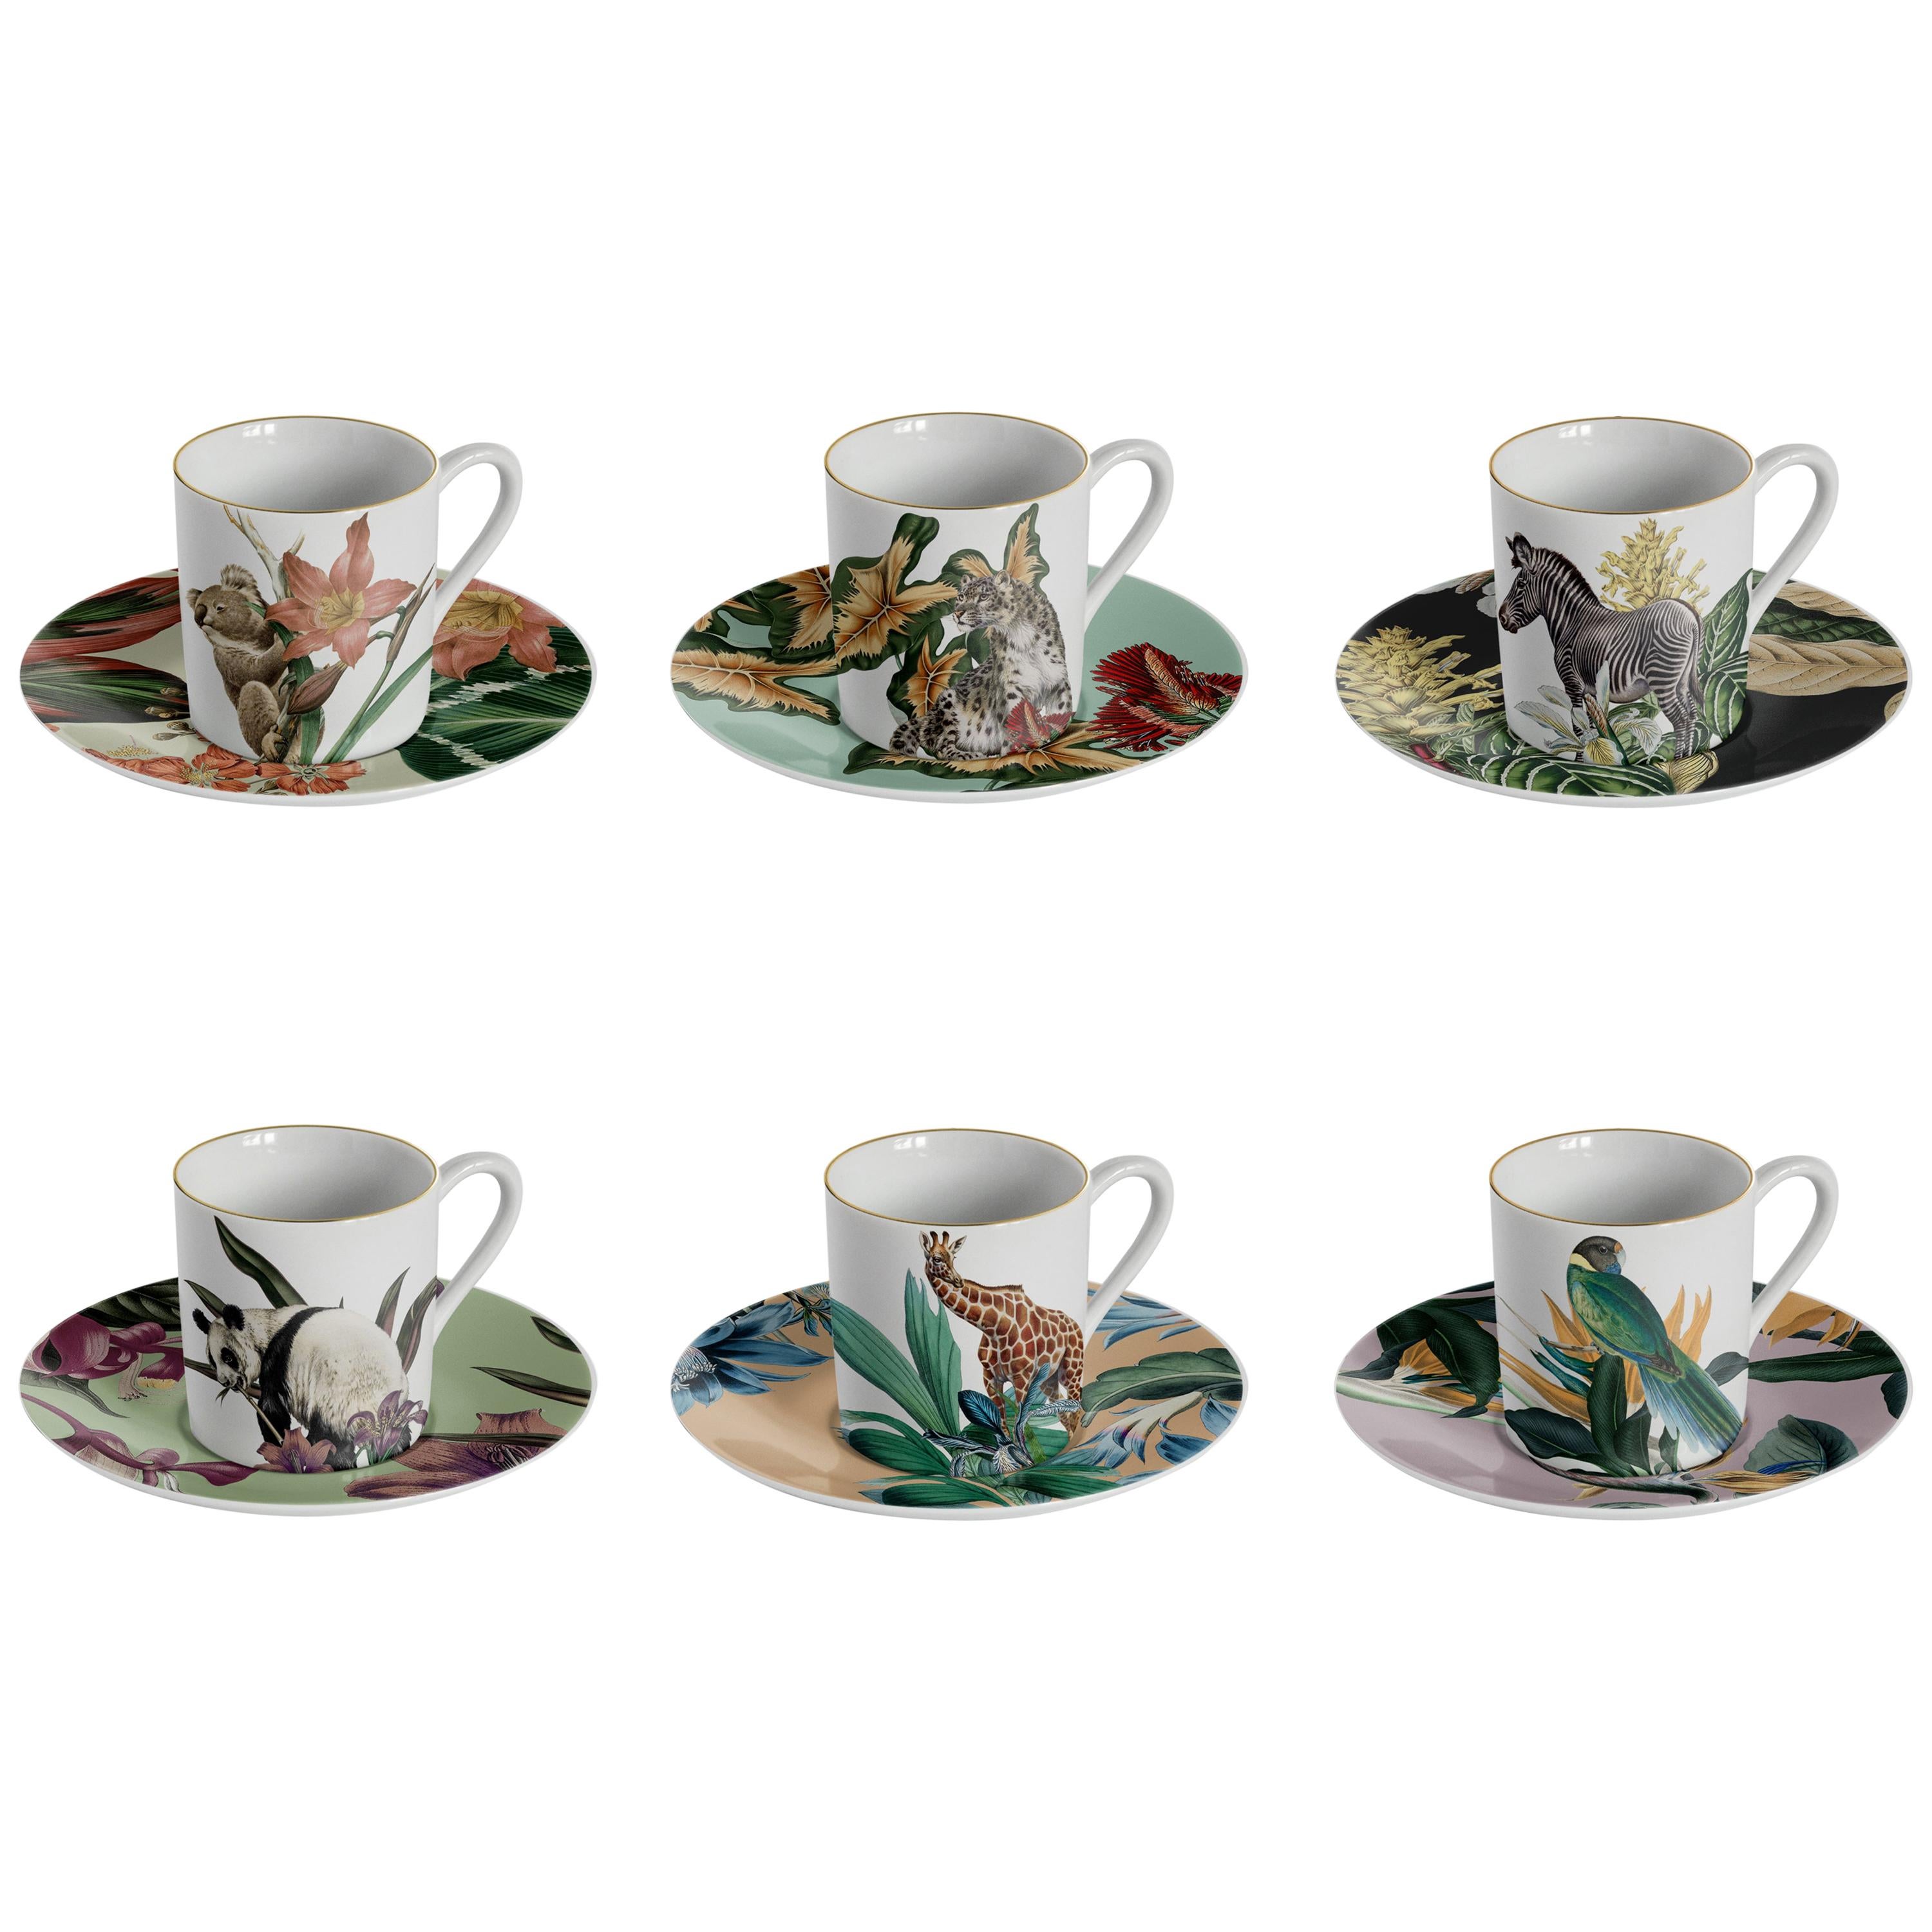 Animalia:: Kaffeeservice mit sechs zeitgenössischen Porzellanen mit dekorativem Design